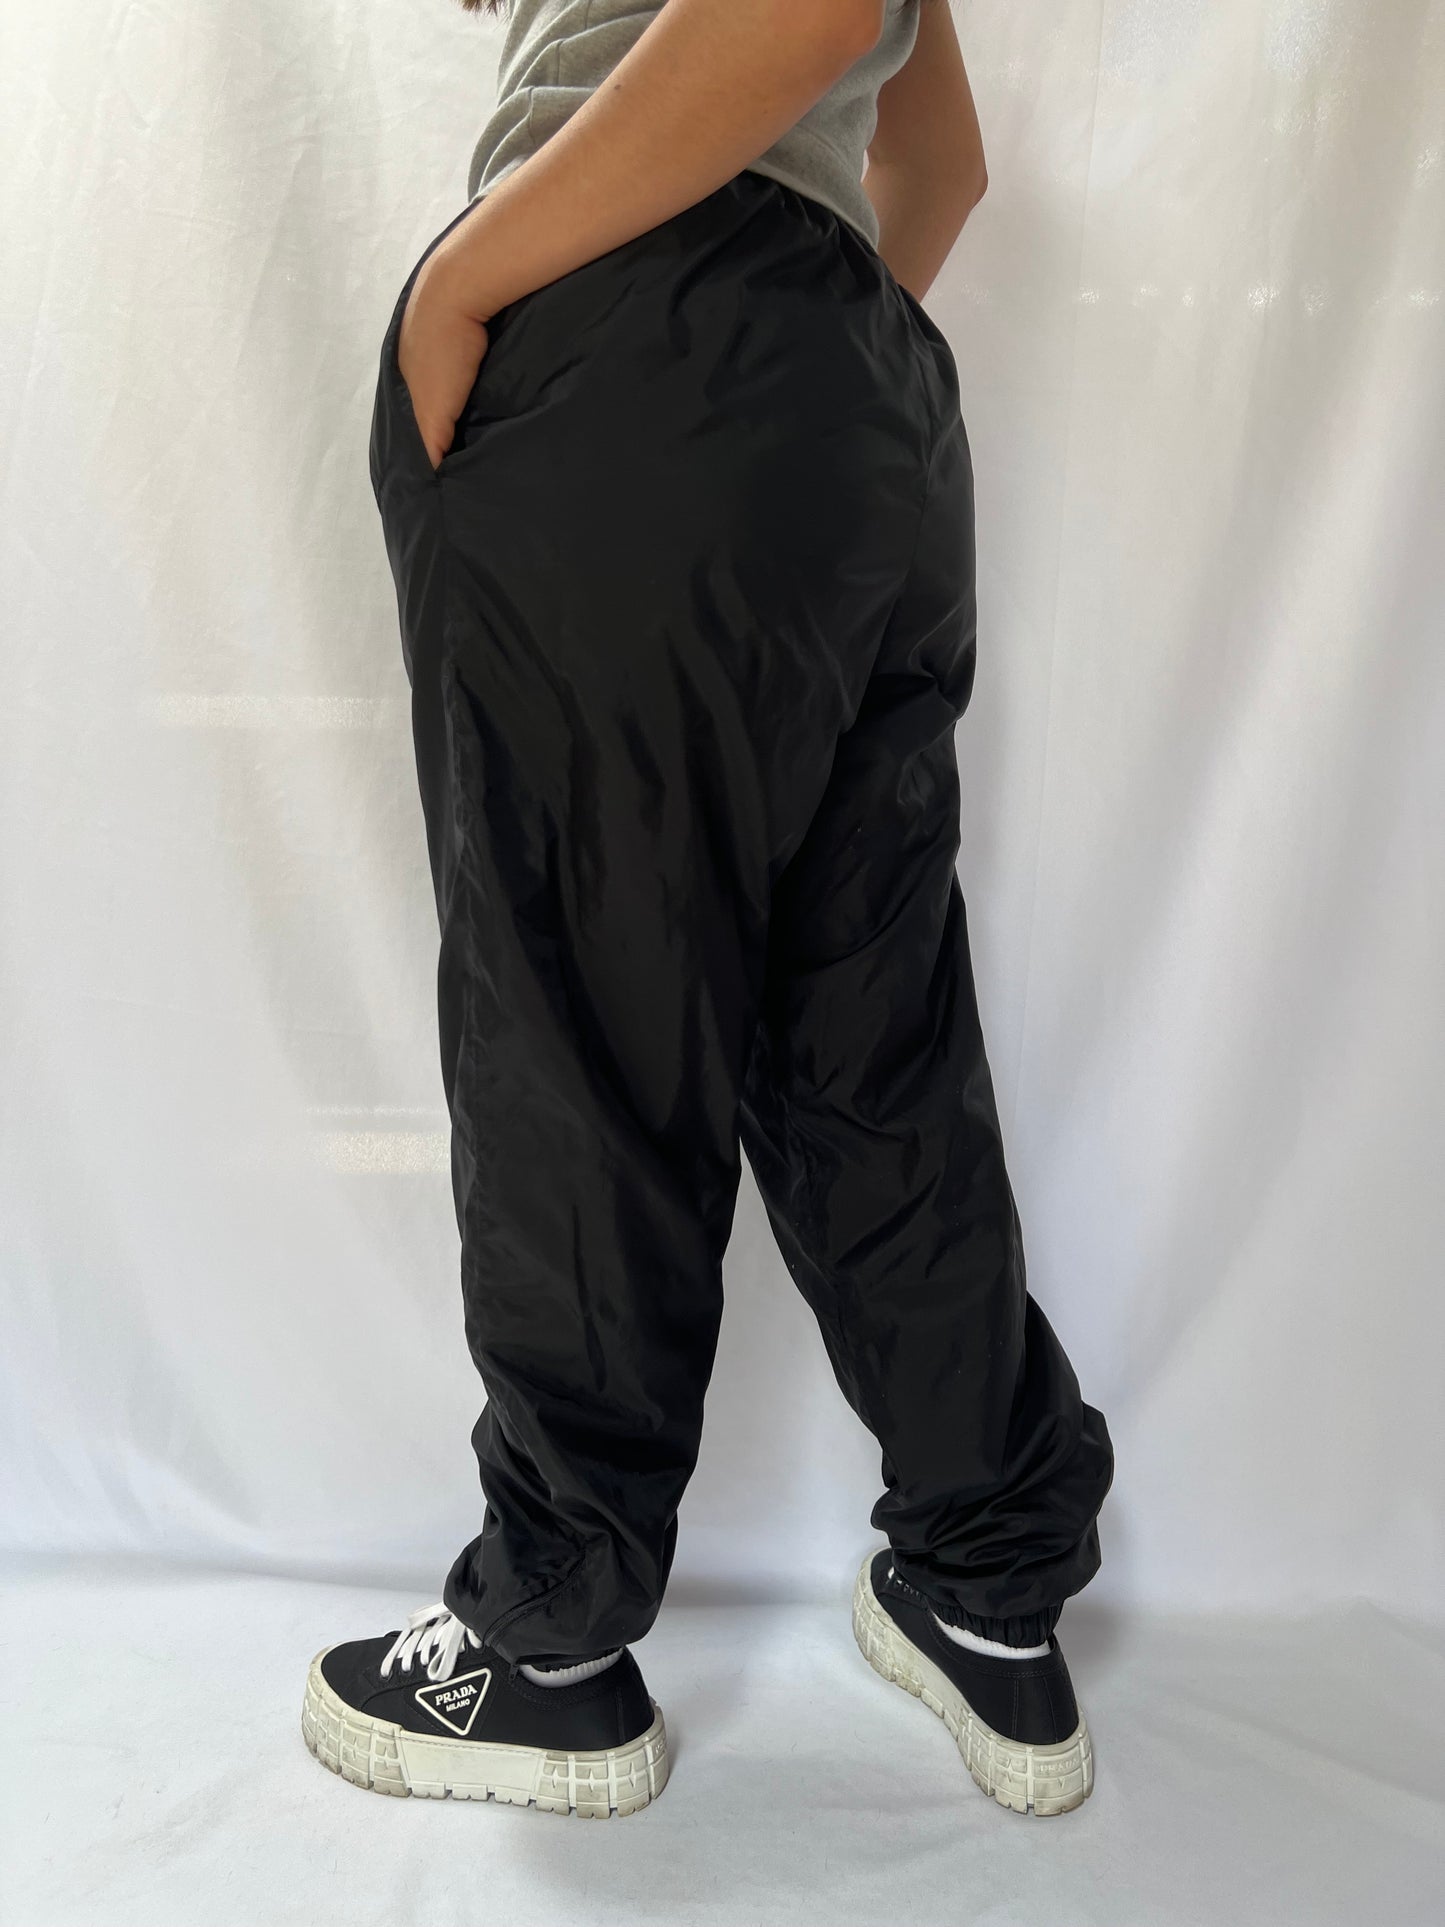 90's Nike Black Nylon Pants - M